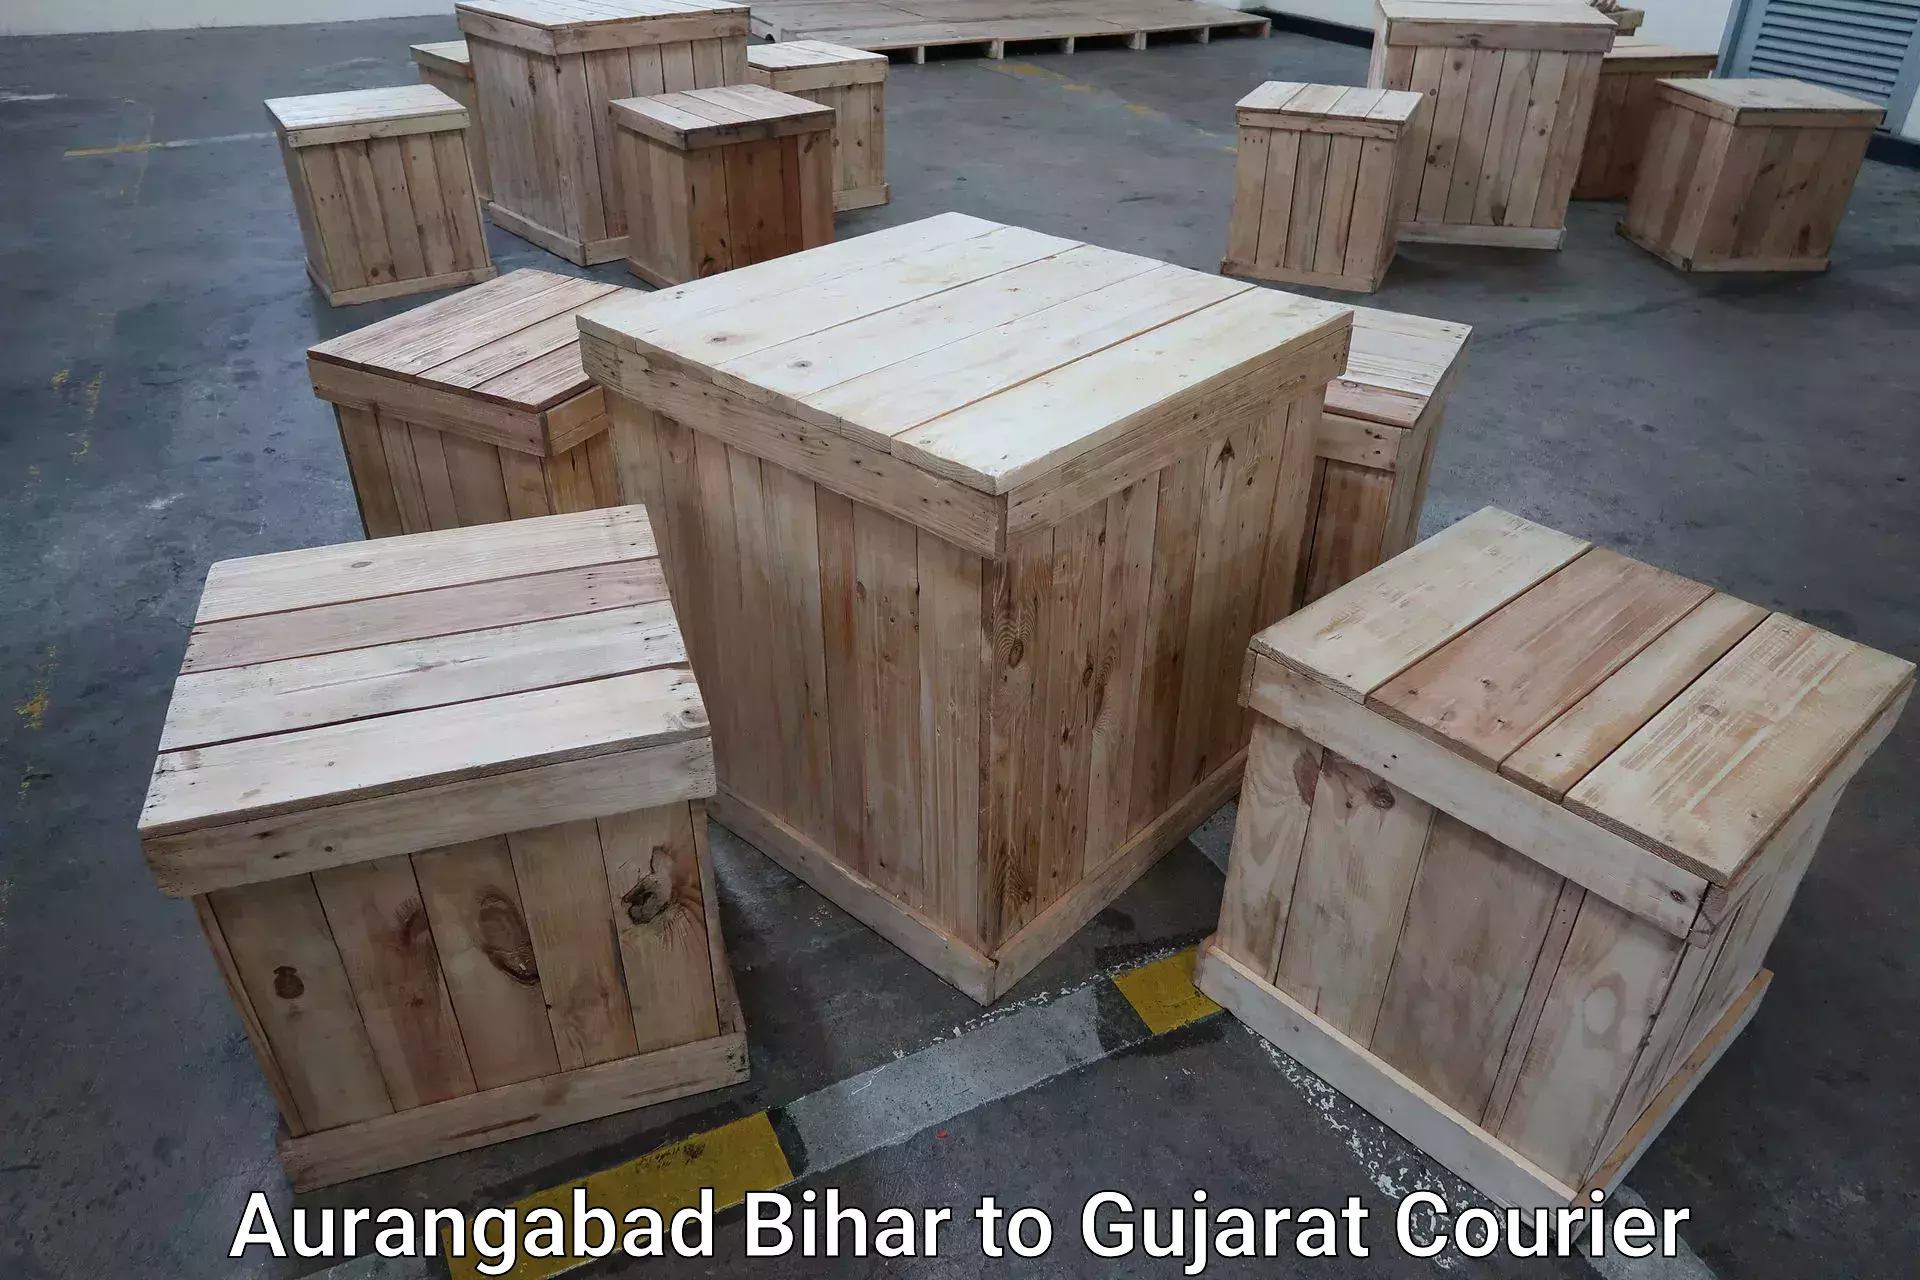 Baggage courier insights in Aurangabad Bihar to Kachchh